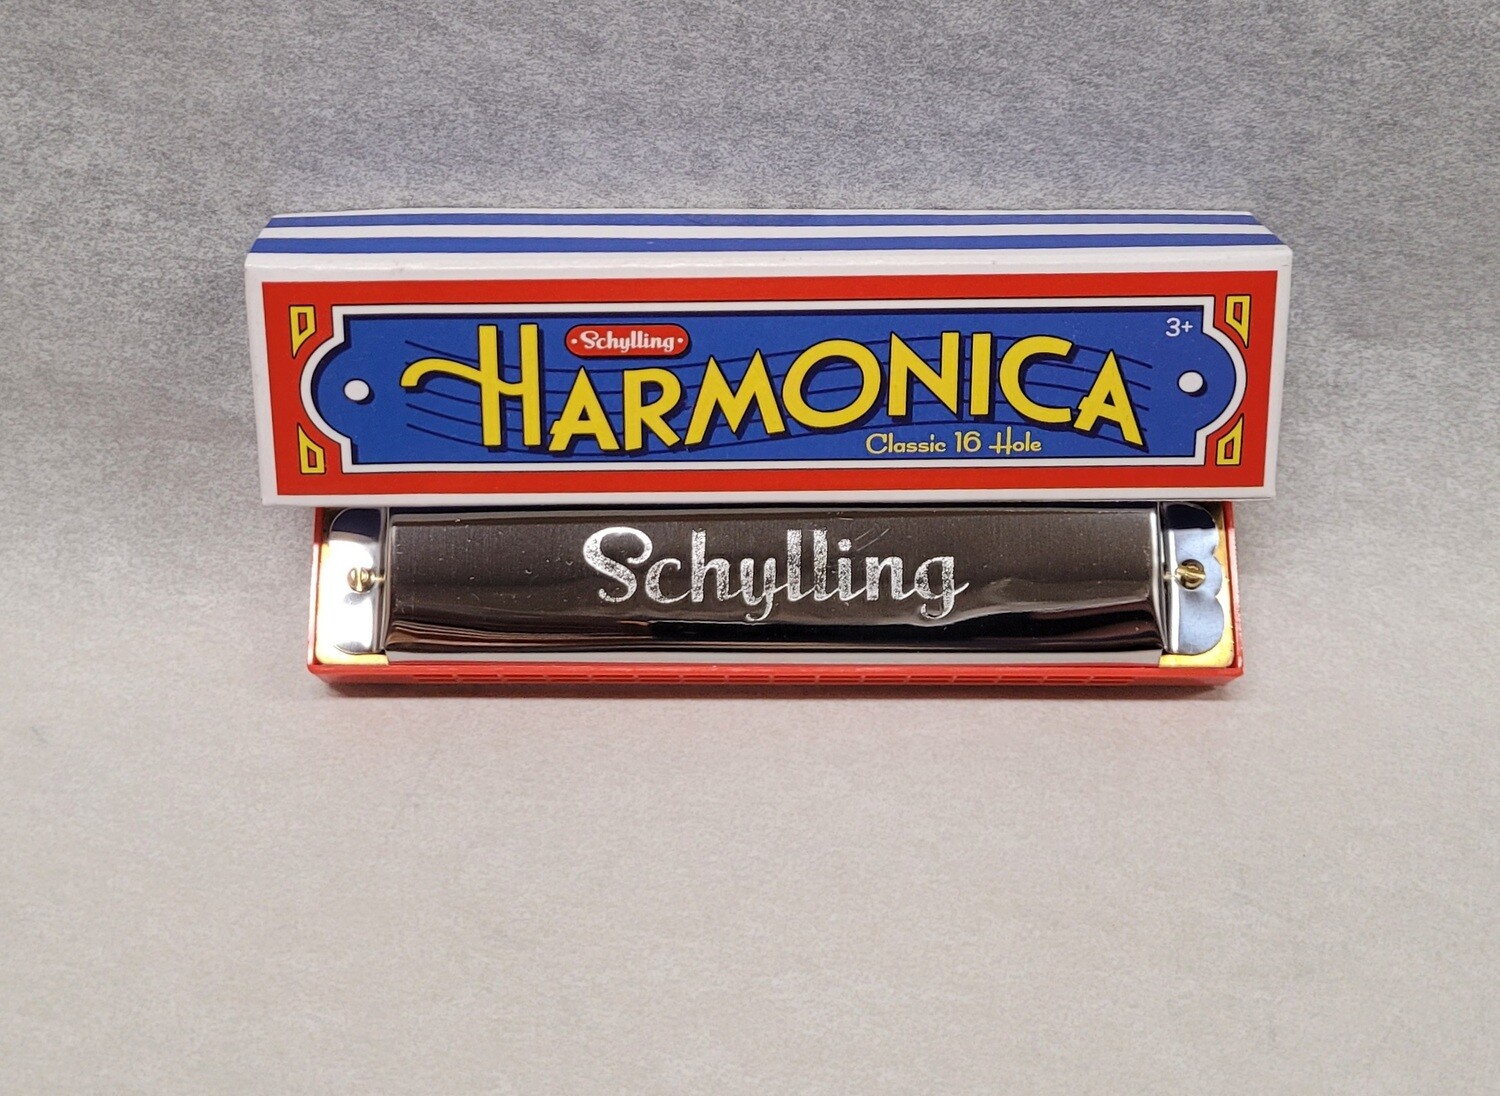 Harmonica - The Brewster Store Cape Cod